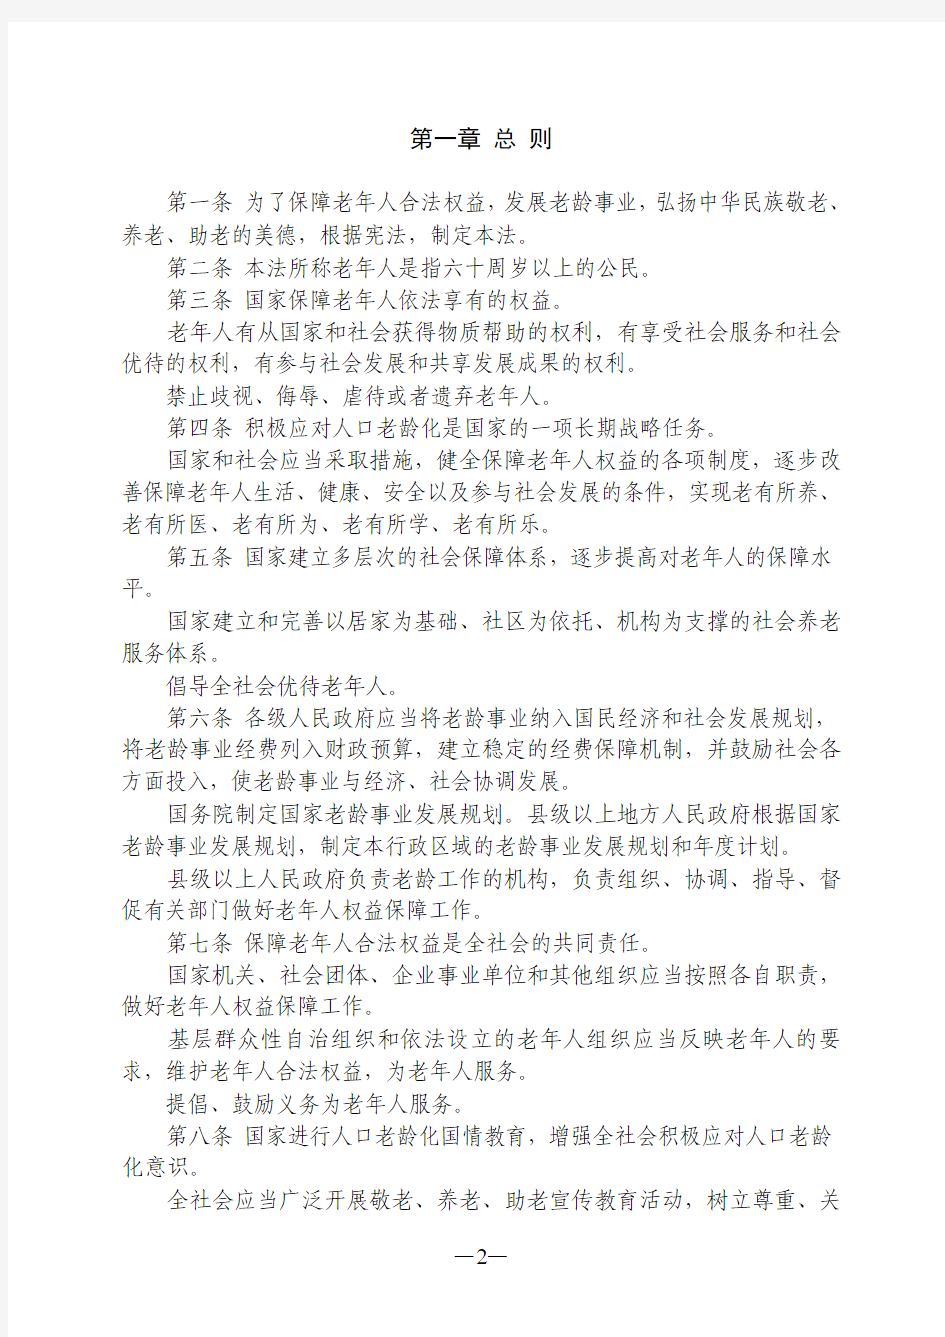 中华人民共和国老年人权益保障法(2012年12月28日修订)